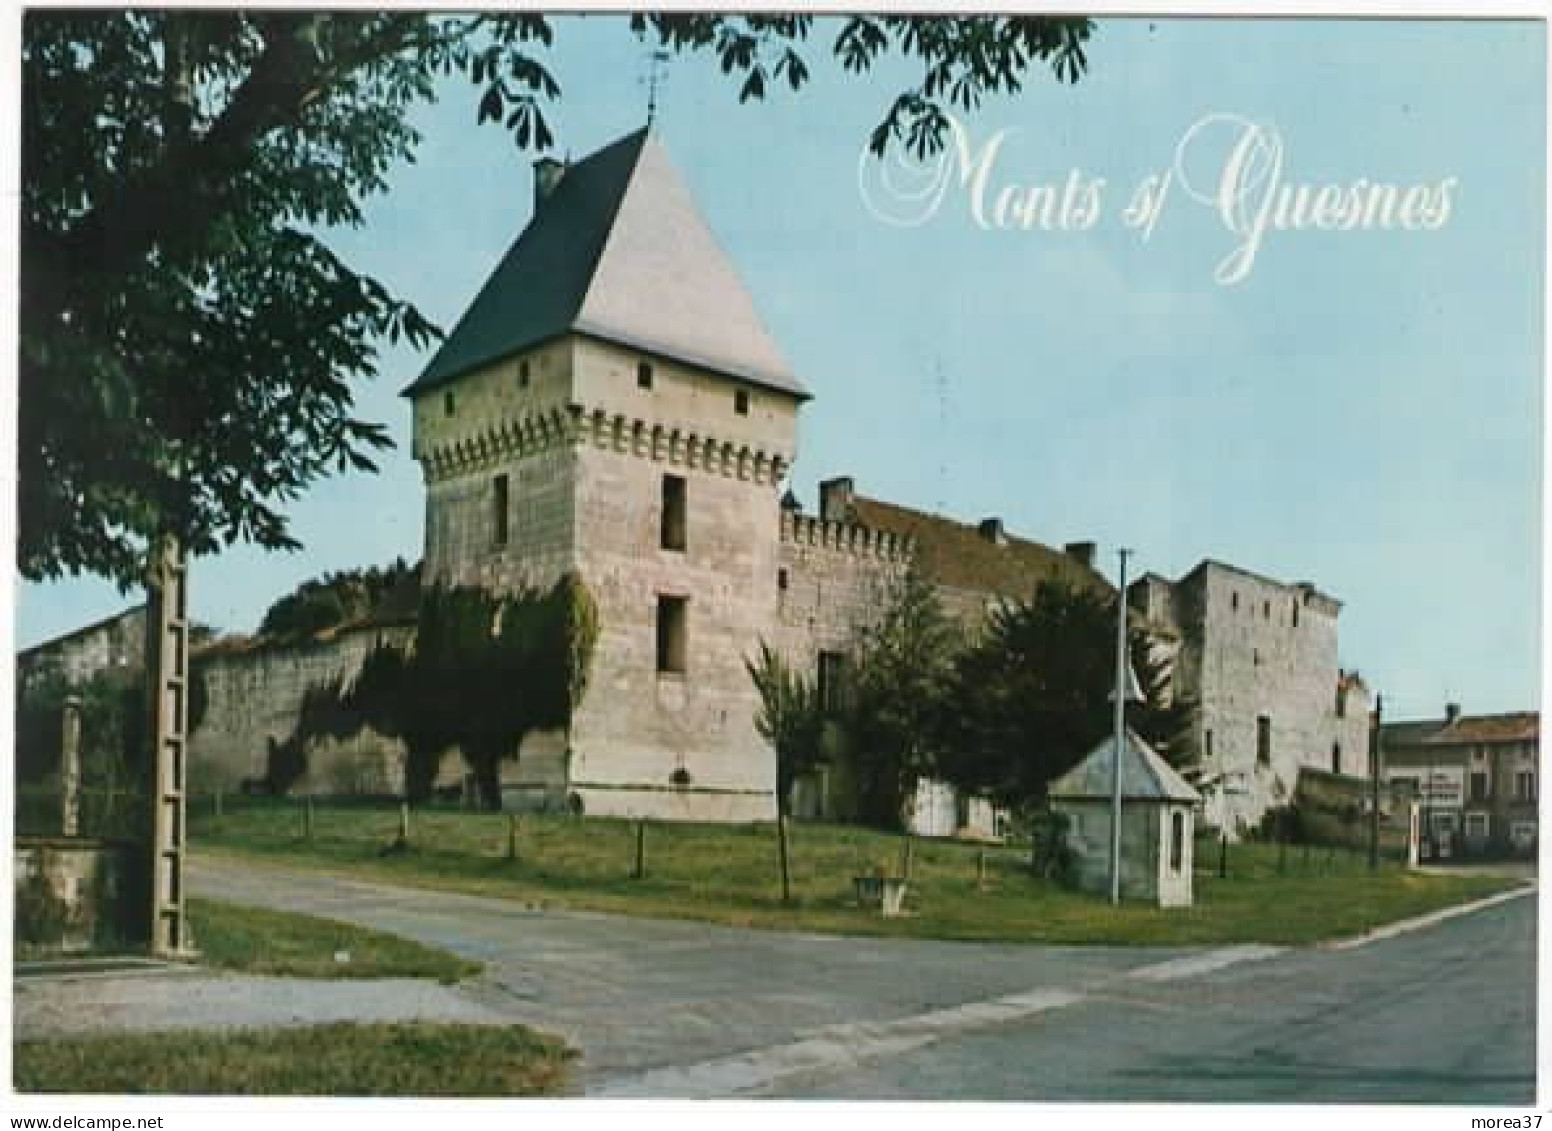 MONTS SUR GUESNES    Le Château - Monts Sur Guesnes